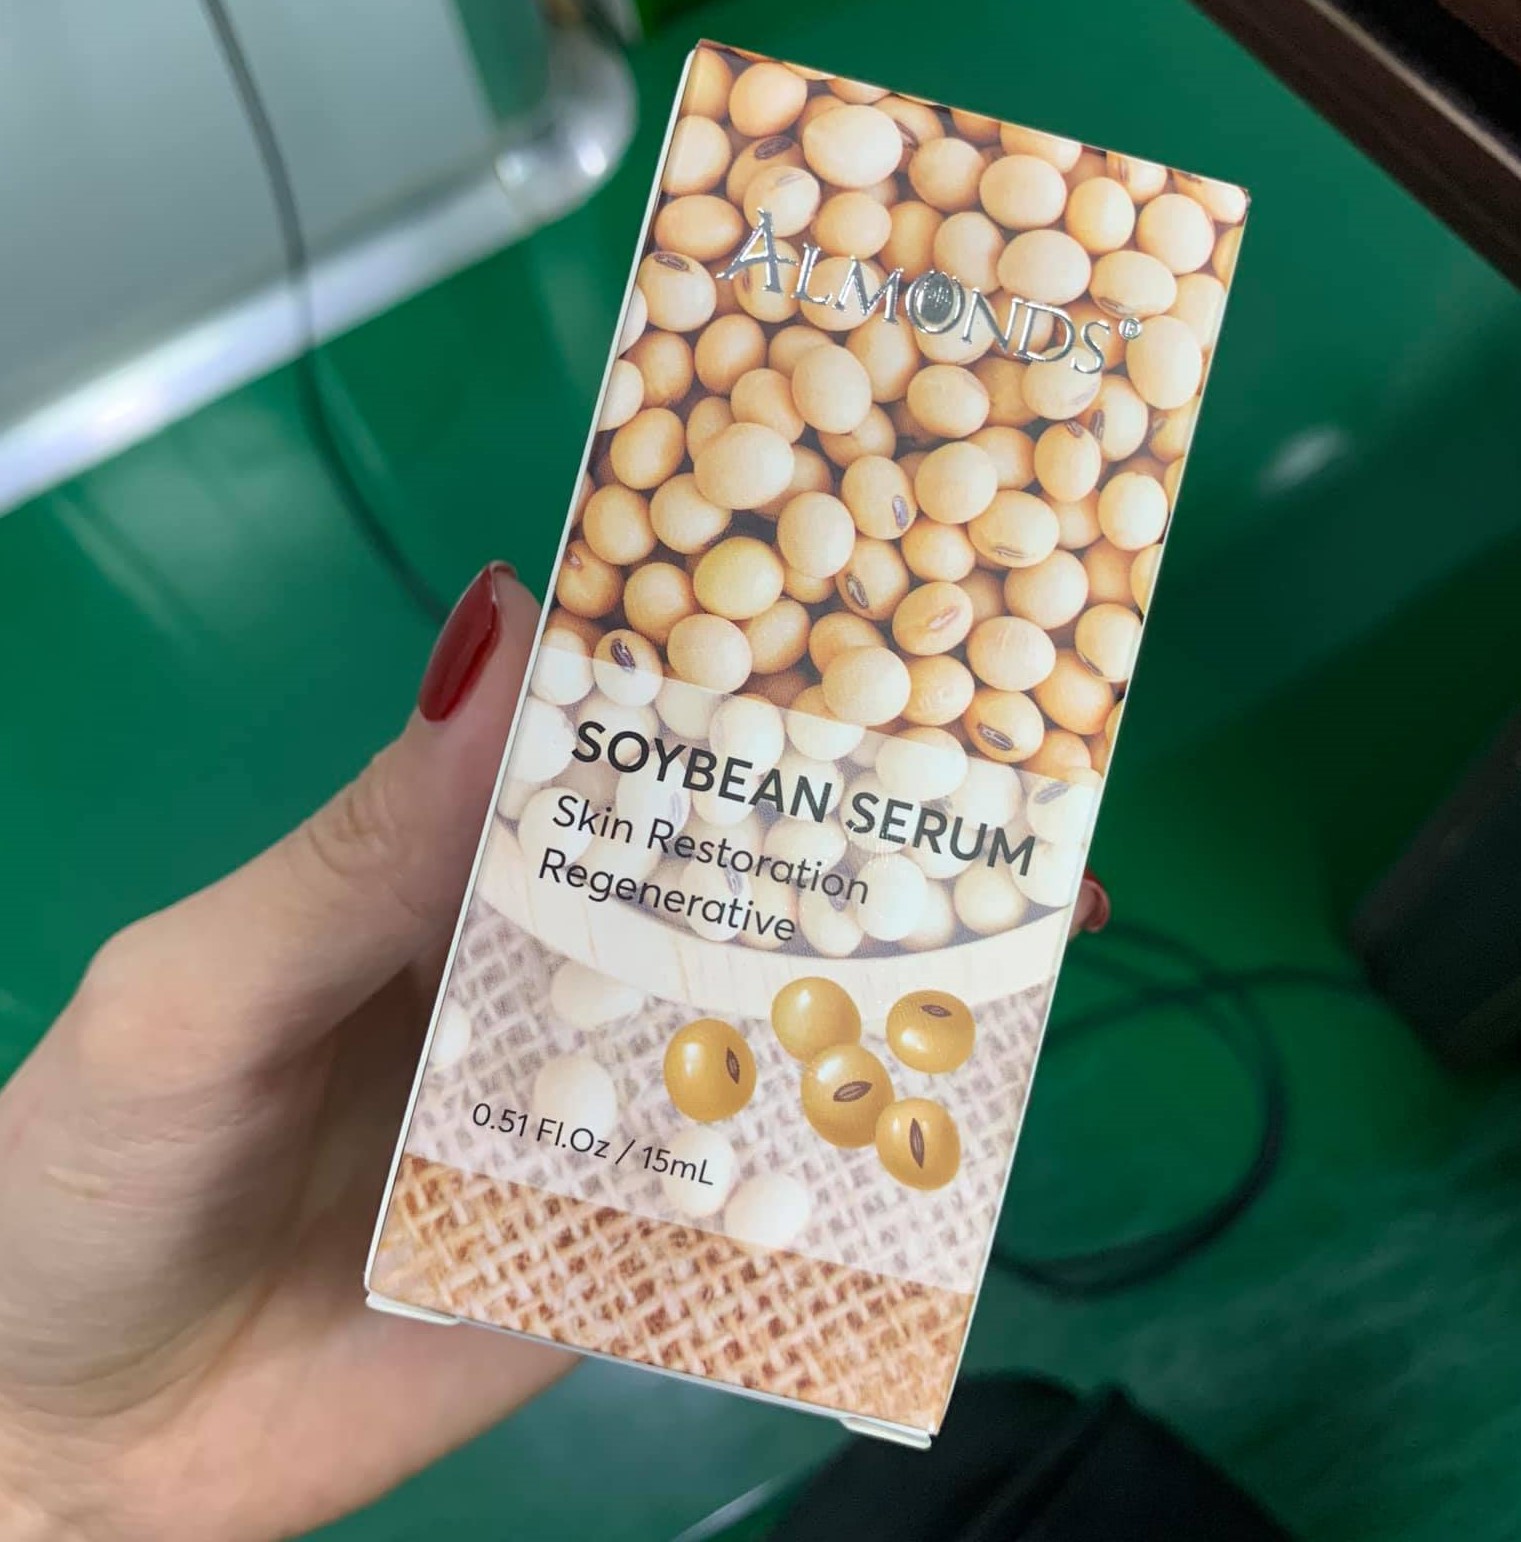 Serum Đậu Nành Almonds Soybean